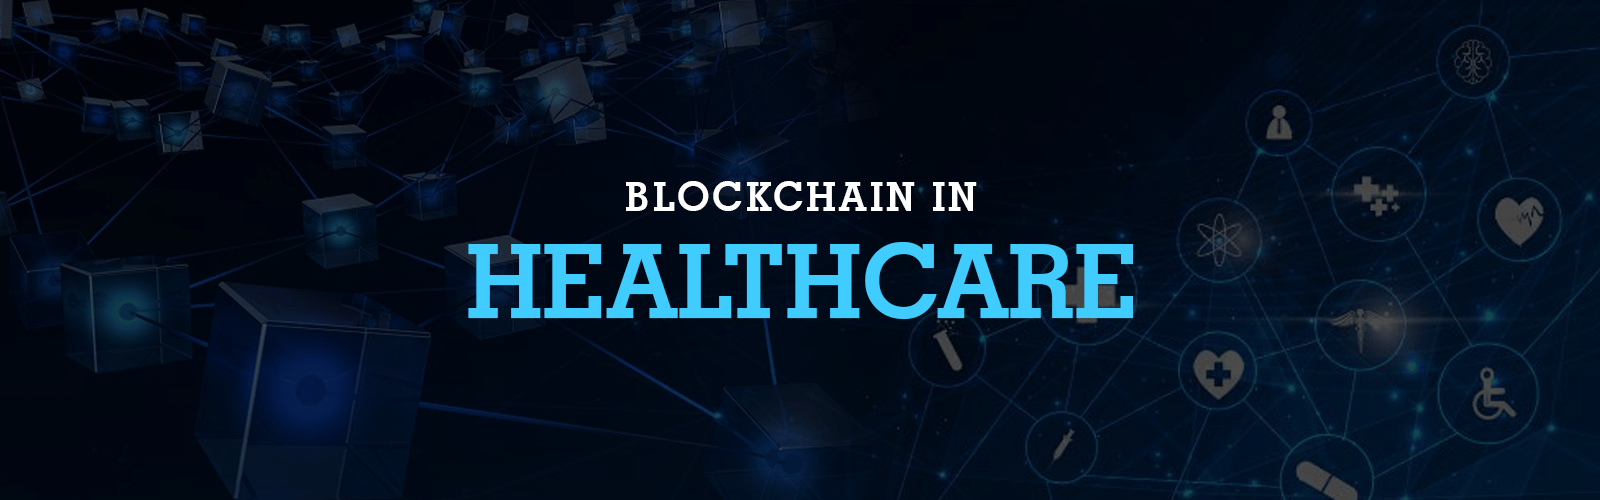 blockchain in healthcare epillo